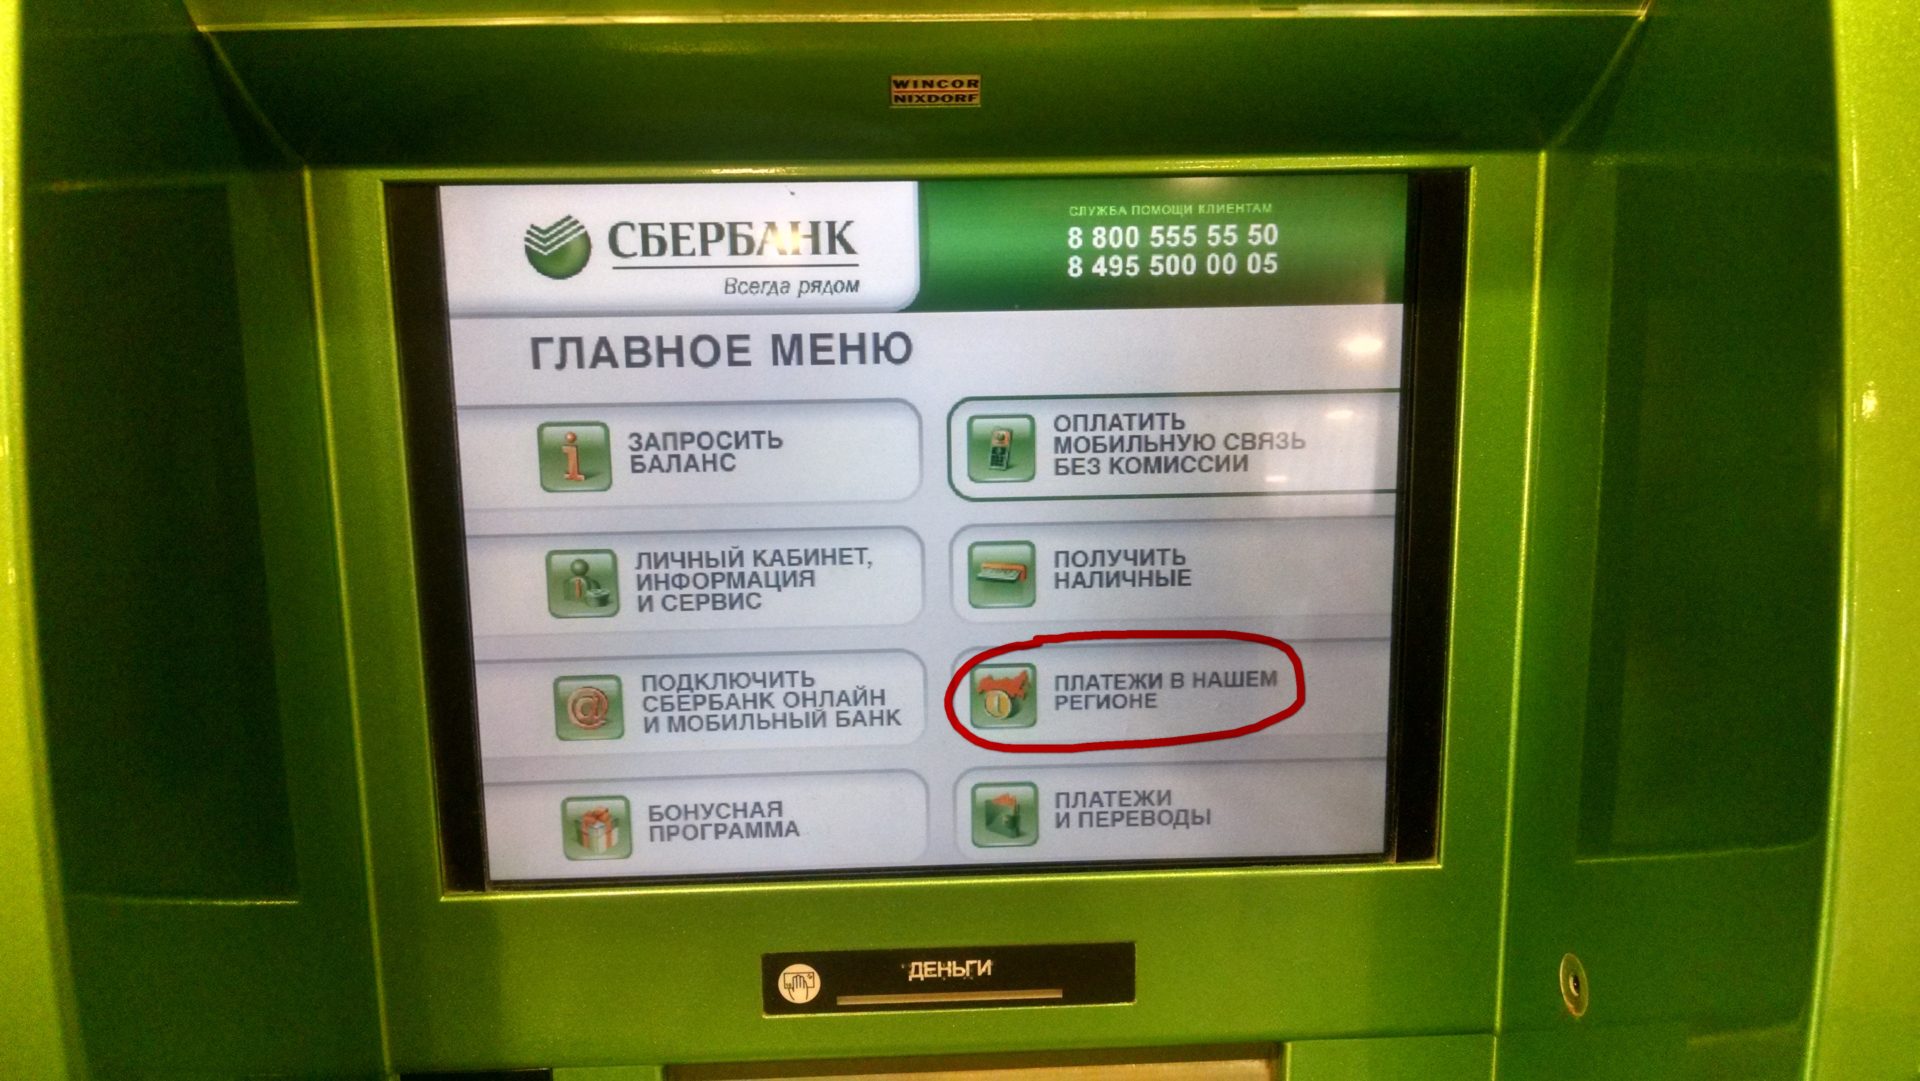 Сбербанк внесение наличных через банкомат комиссия